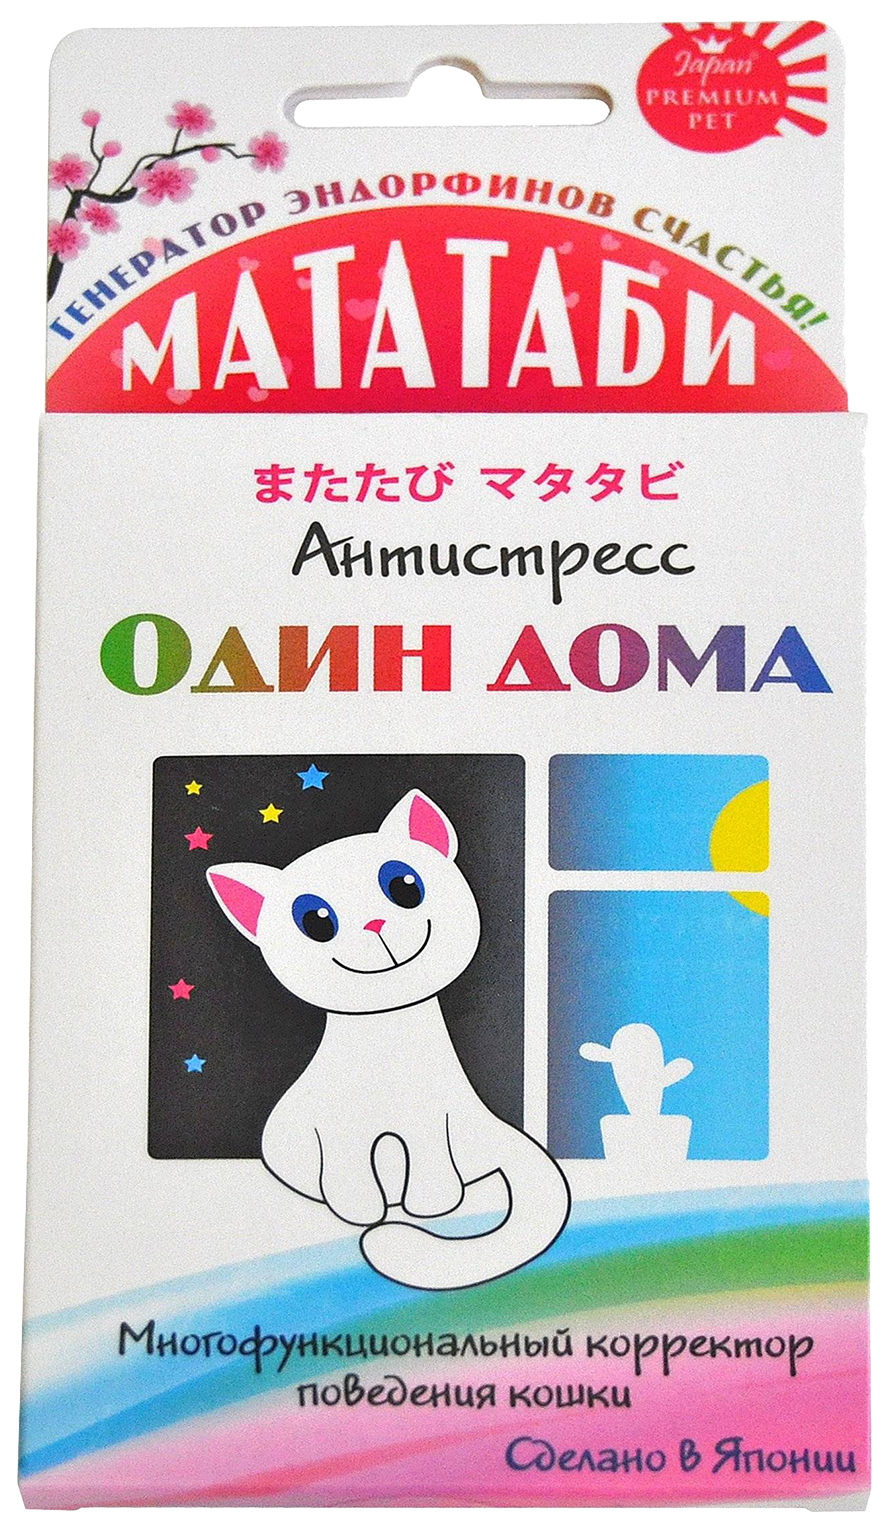 Мататаби Premium Pet Japan Один дома для снятия стресса кошек (1 г)